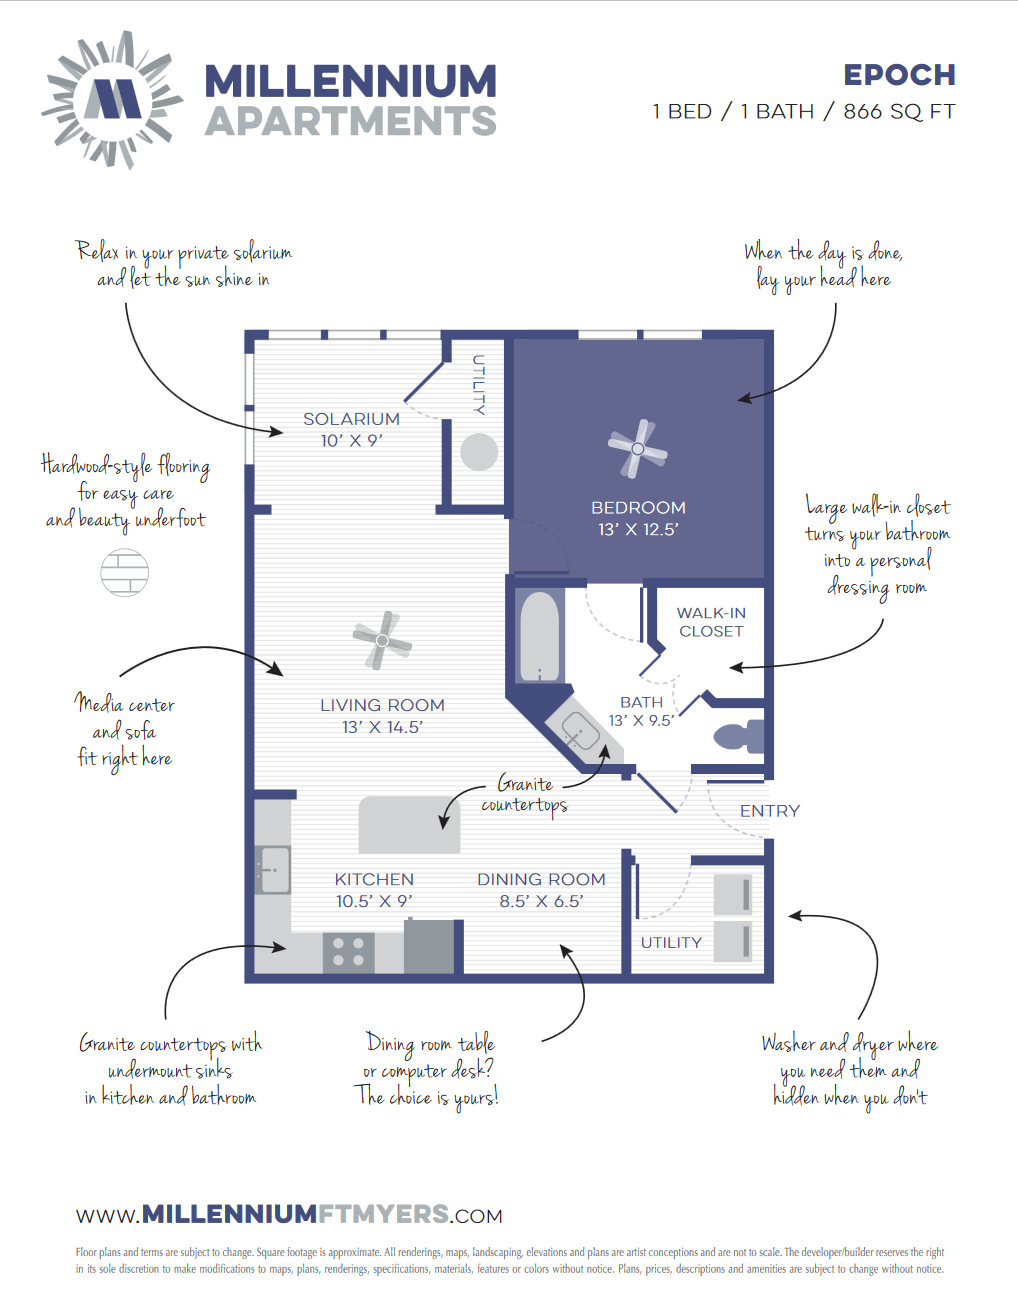 Epoch Floorplan by Millennium Apartments